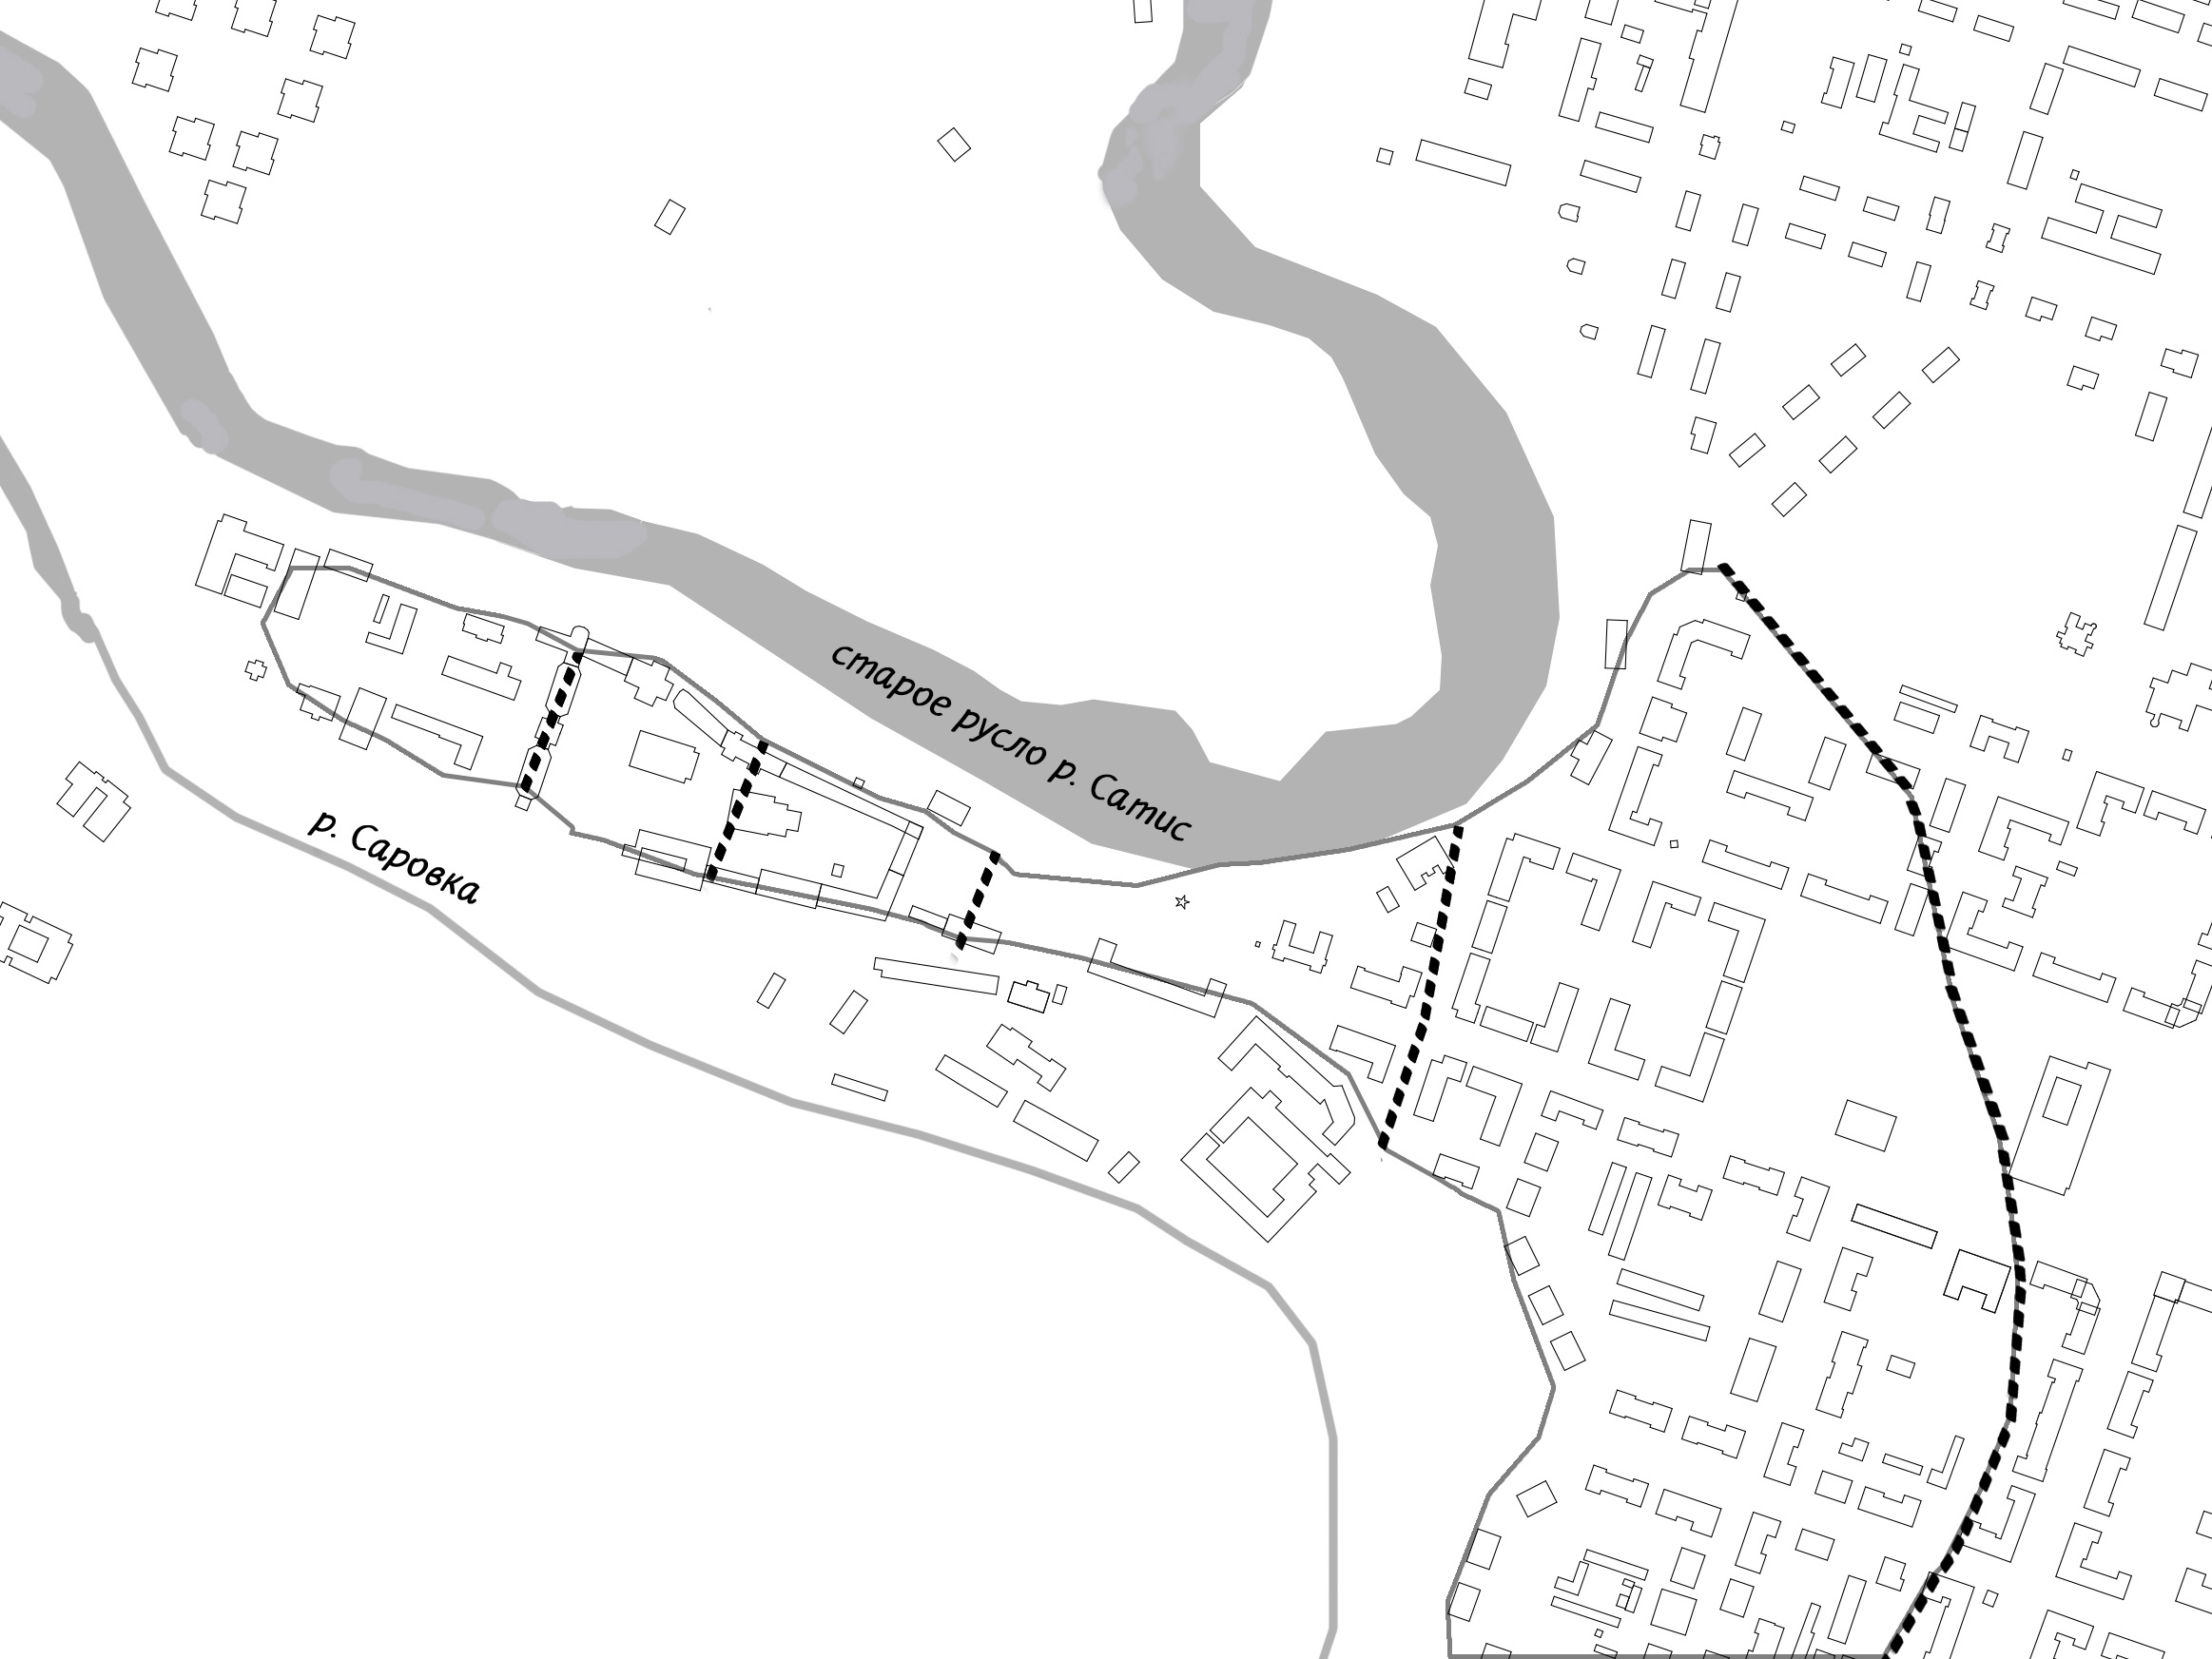 Схема Старого городища, совмещенная с современной планировкой Сарова